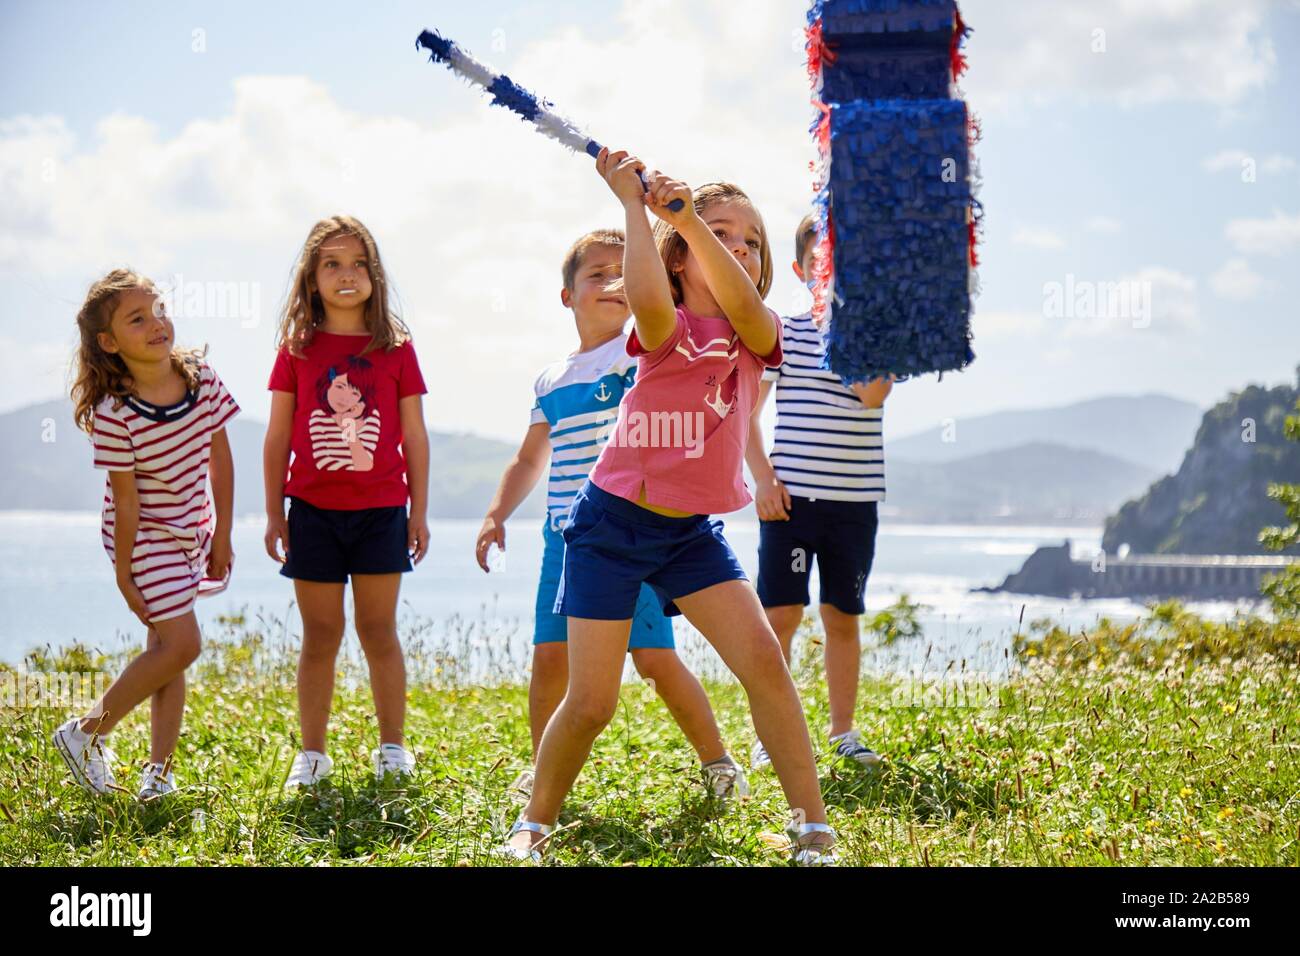 Children striking an anchor-shaped piñata, Getaria, Gipuzkoa, Basque Country, Spain Stock Photo